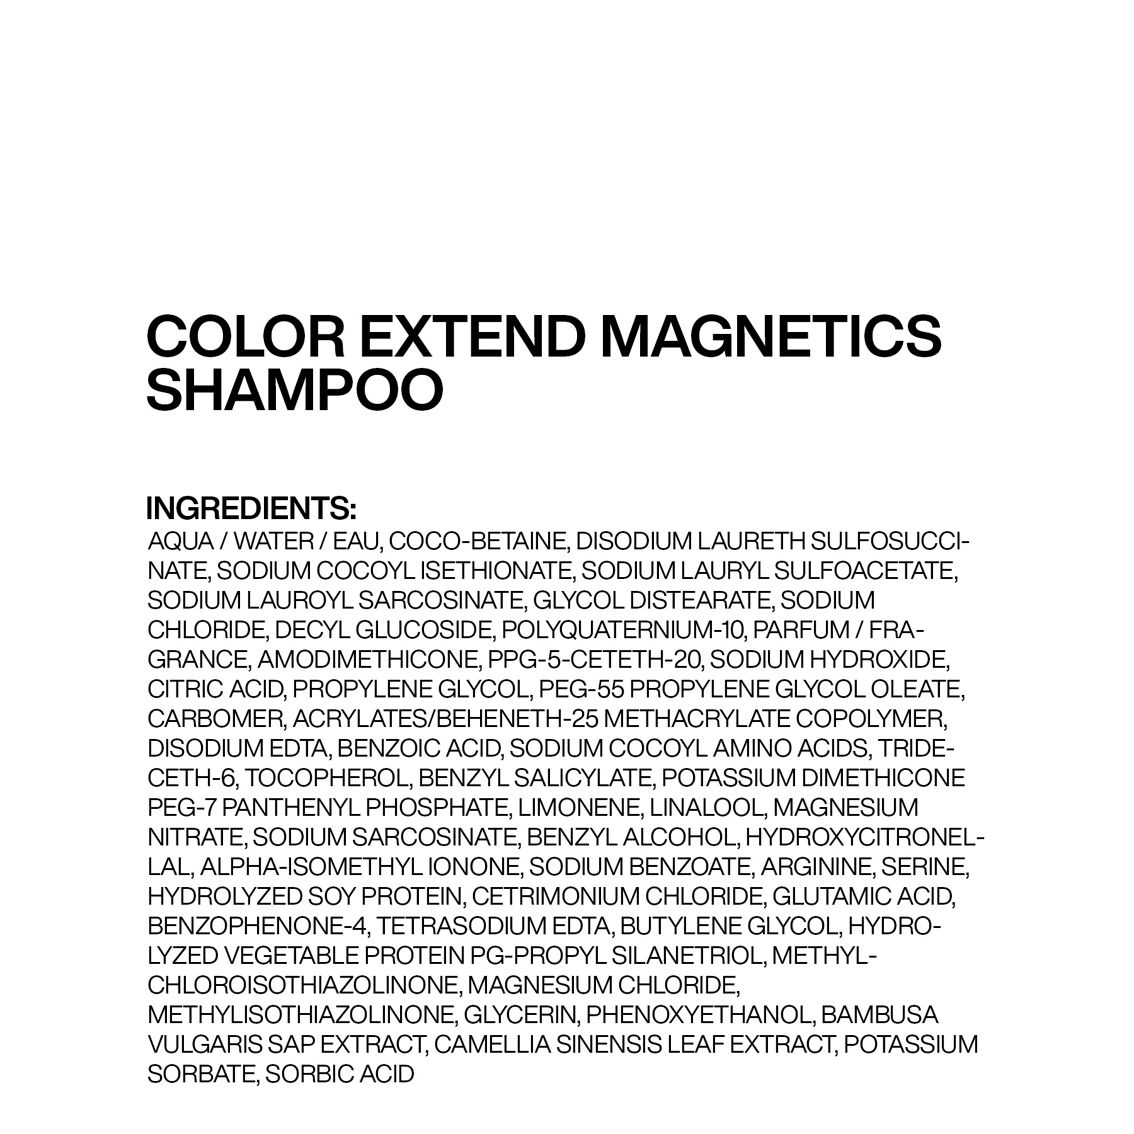 Redken Color Extend Magnetics Shampoo 10.1 oz. - Image 2 of 2